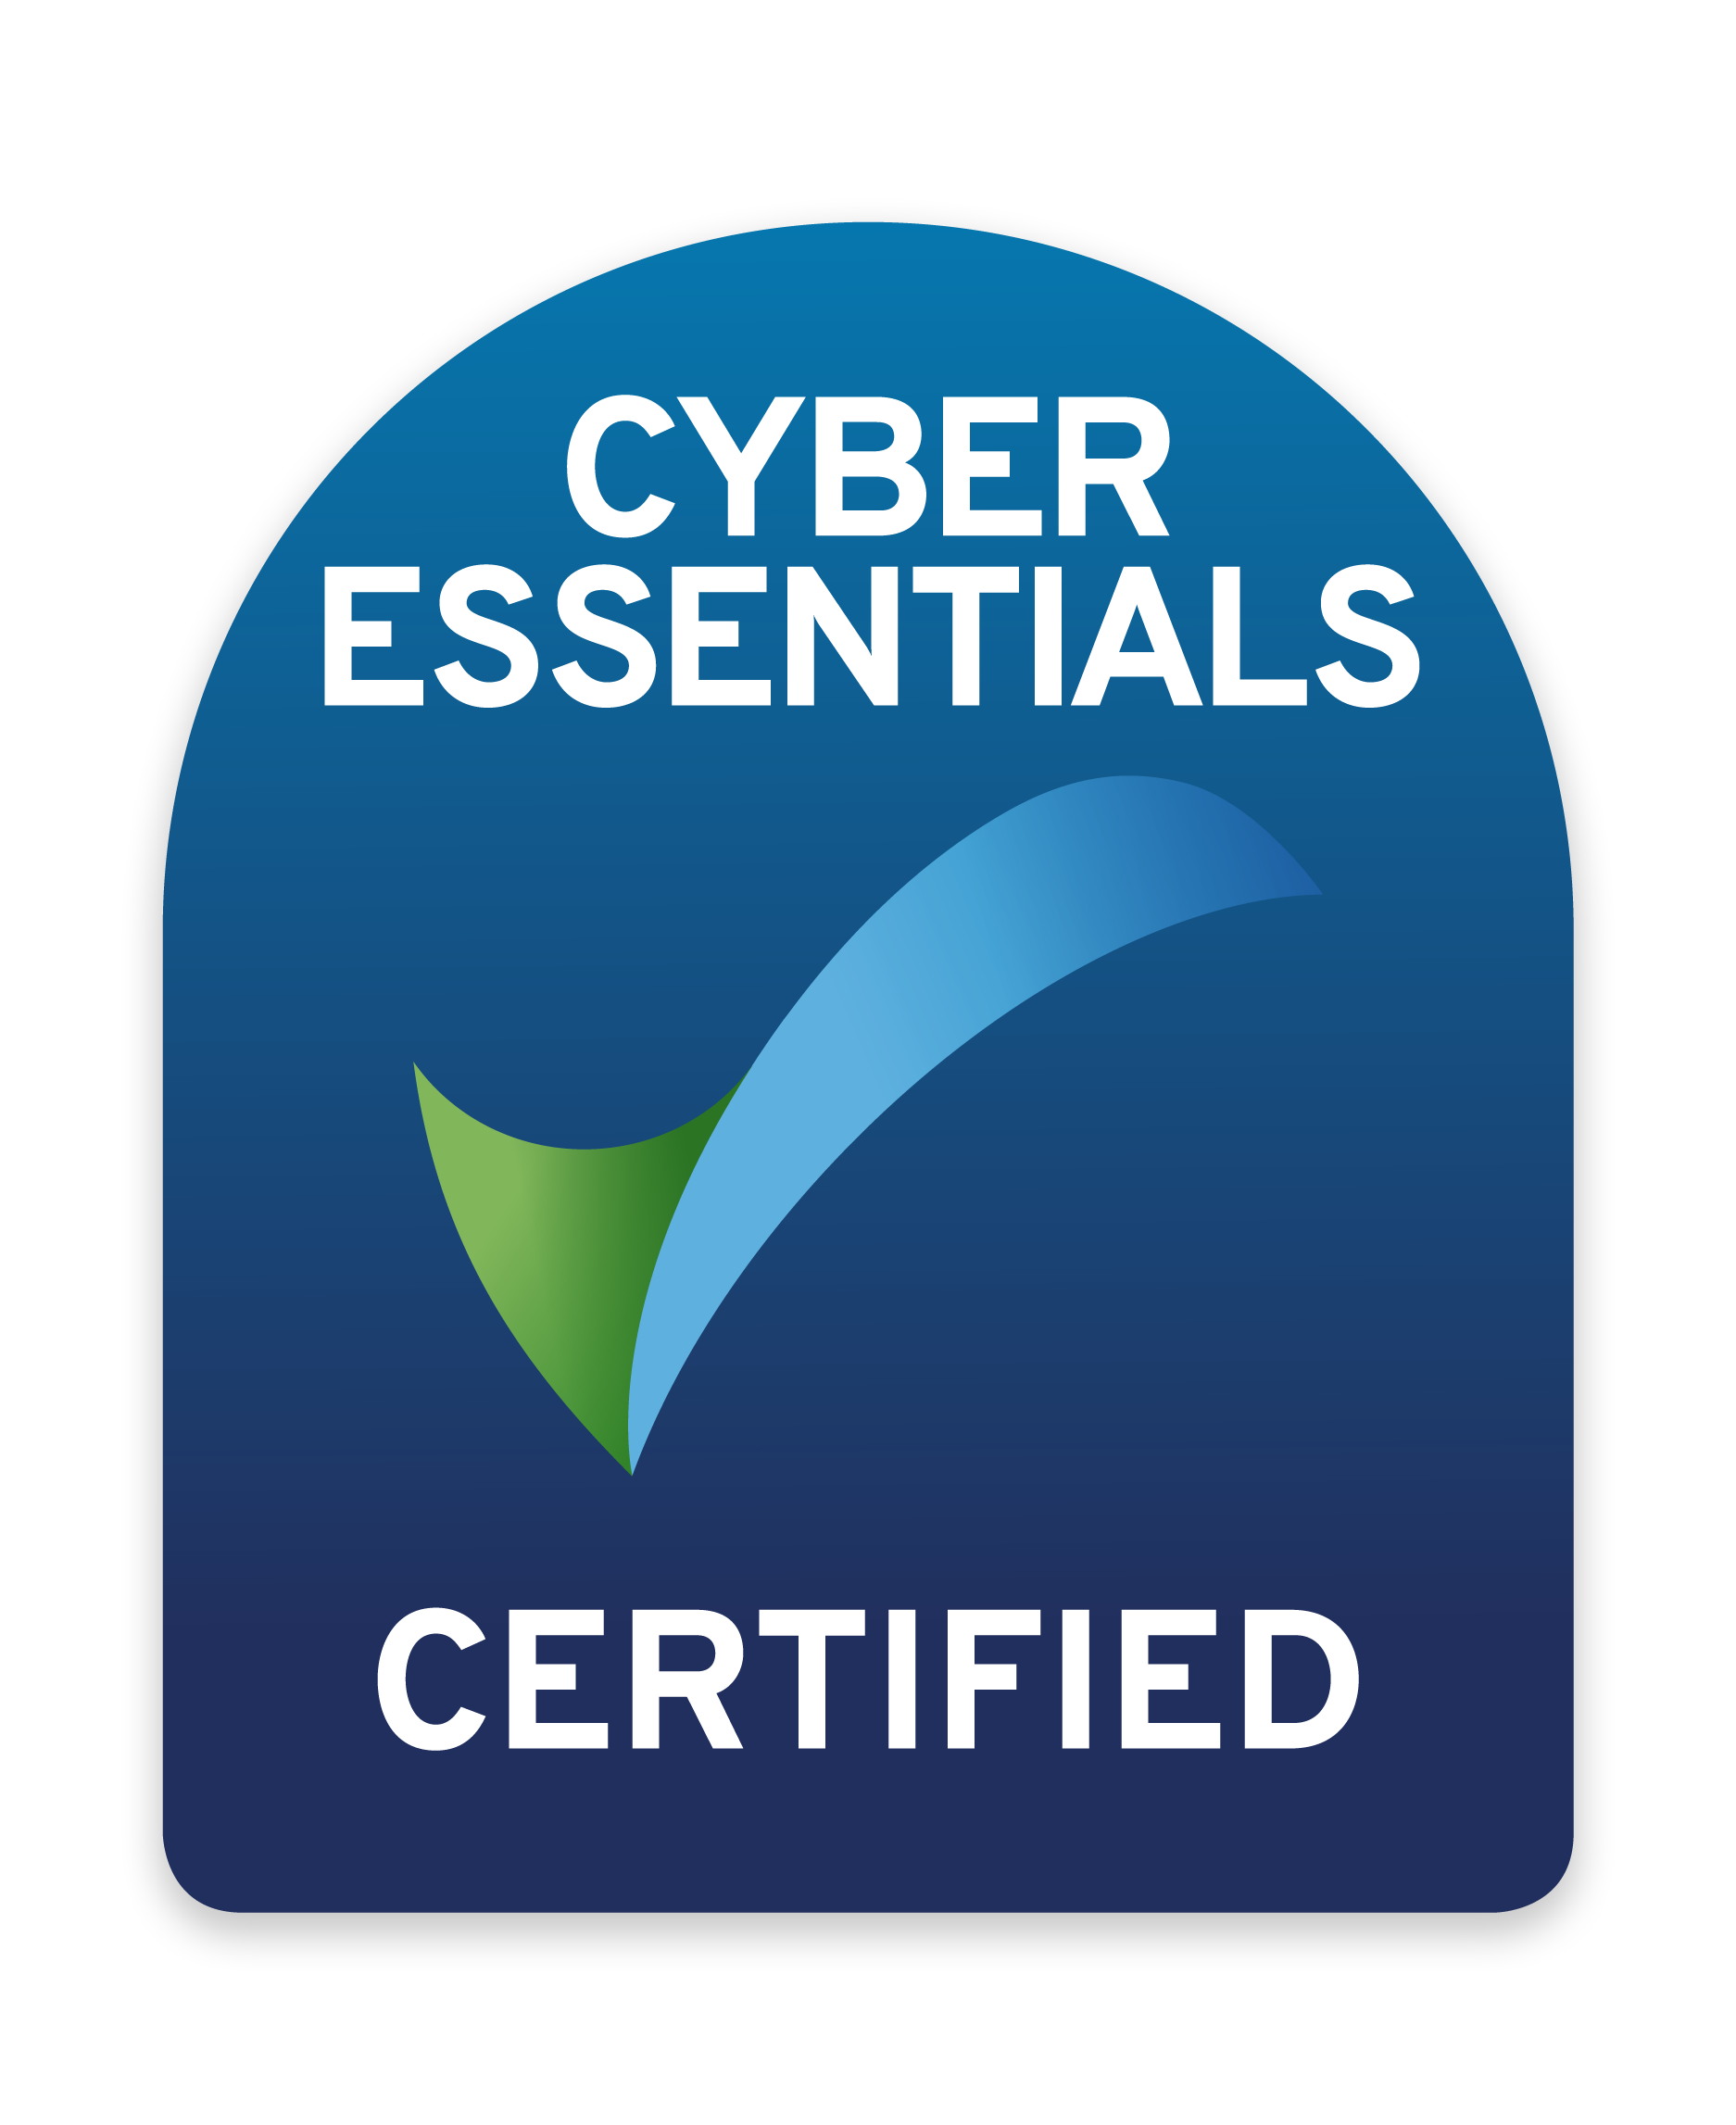 IMSM HK (EN) Cyber Essentials Certification